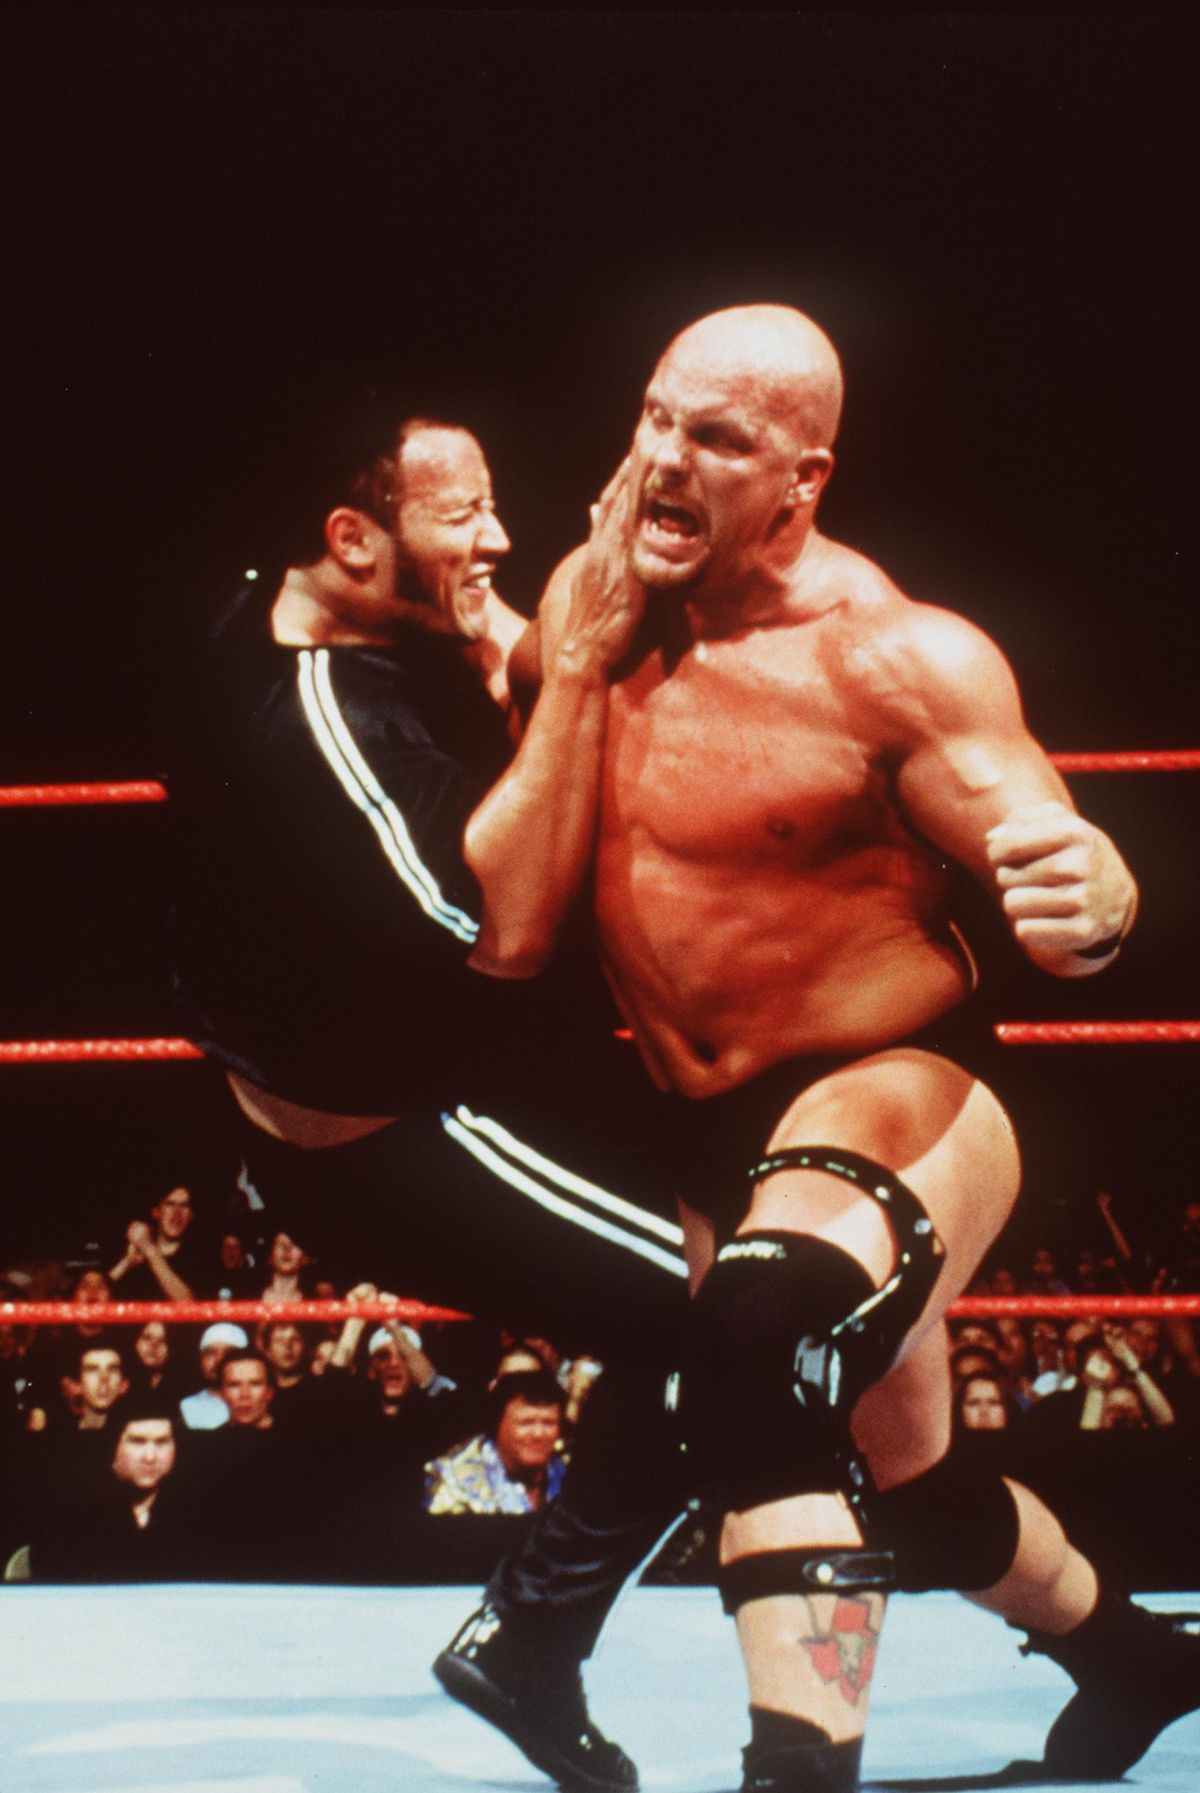 Stone Cold Steve Austin sbatte The Rock sul pad mentre i fan esultano fuori dal ring a WWF Smackdown